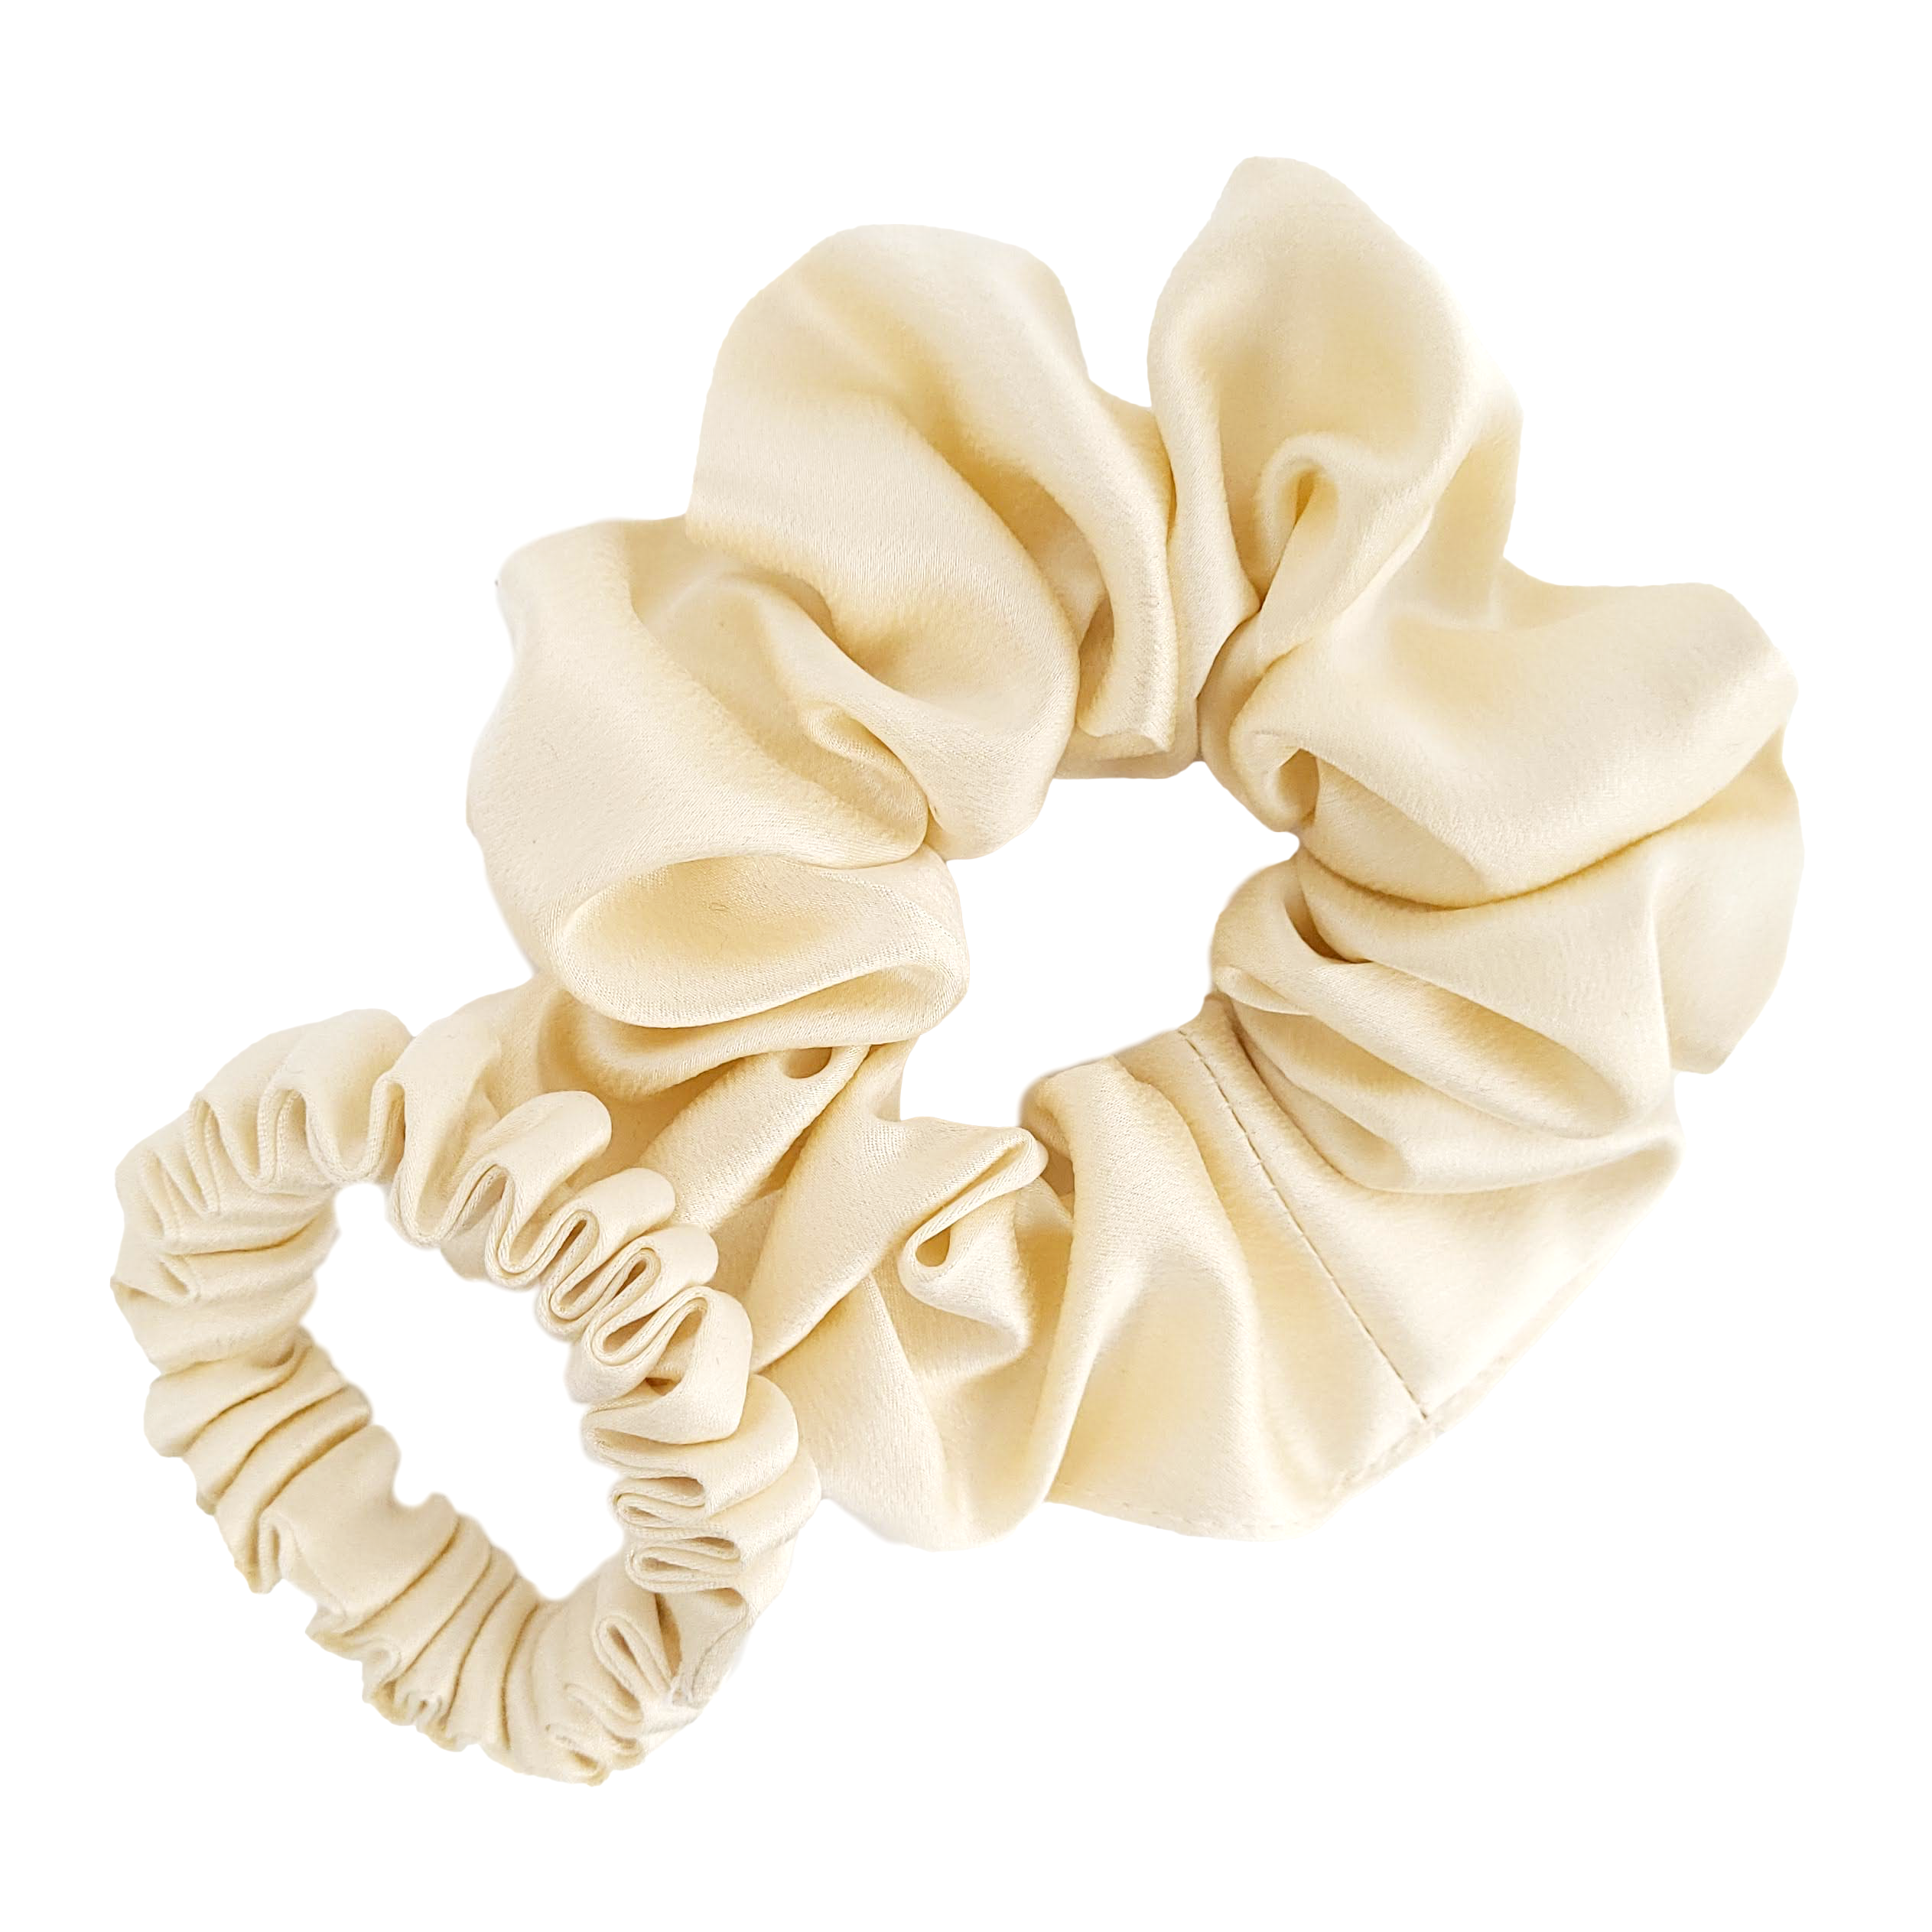 Ivory pure silk hair scrunchie made in Canada handmade by Lynne Kiel